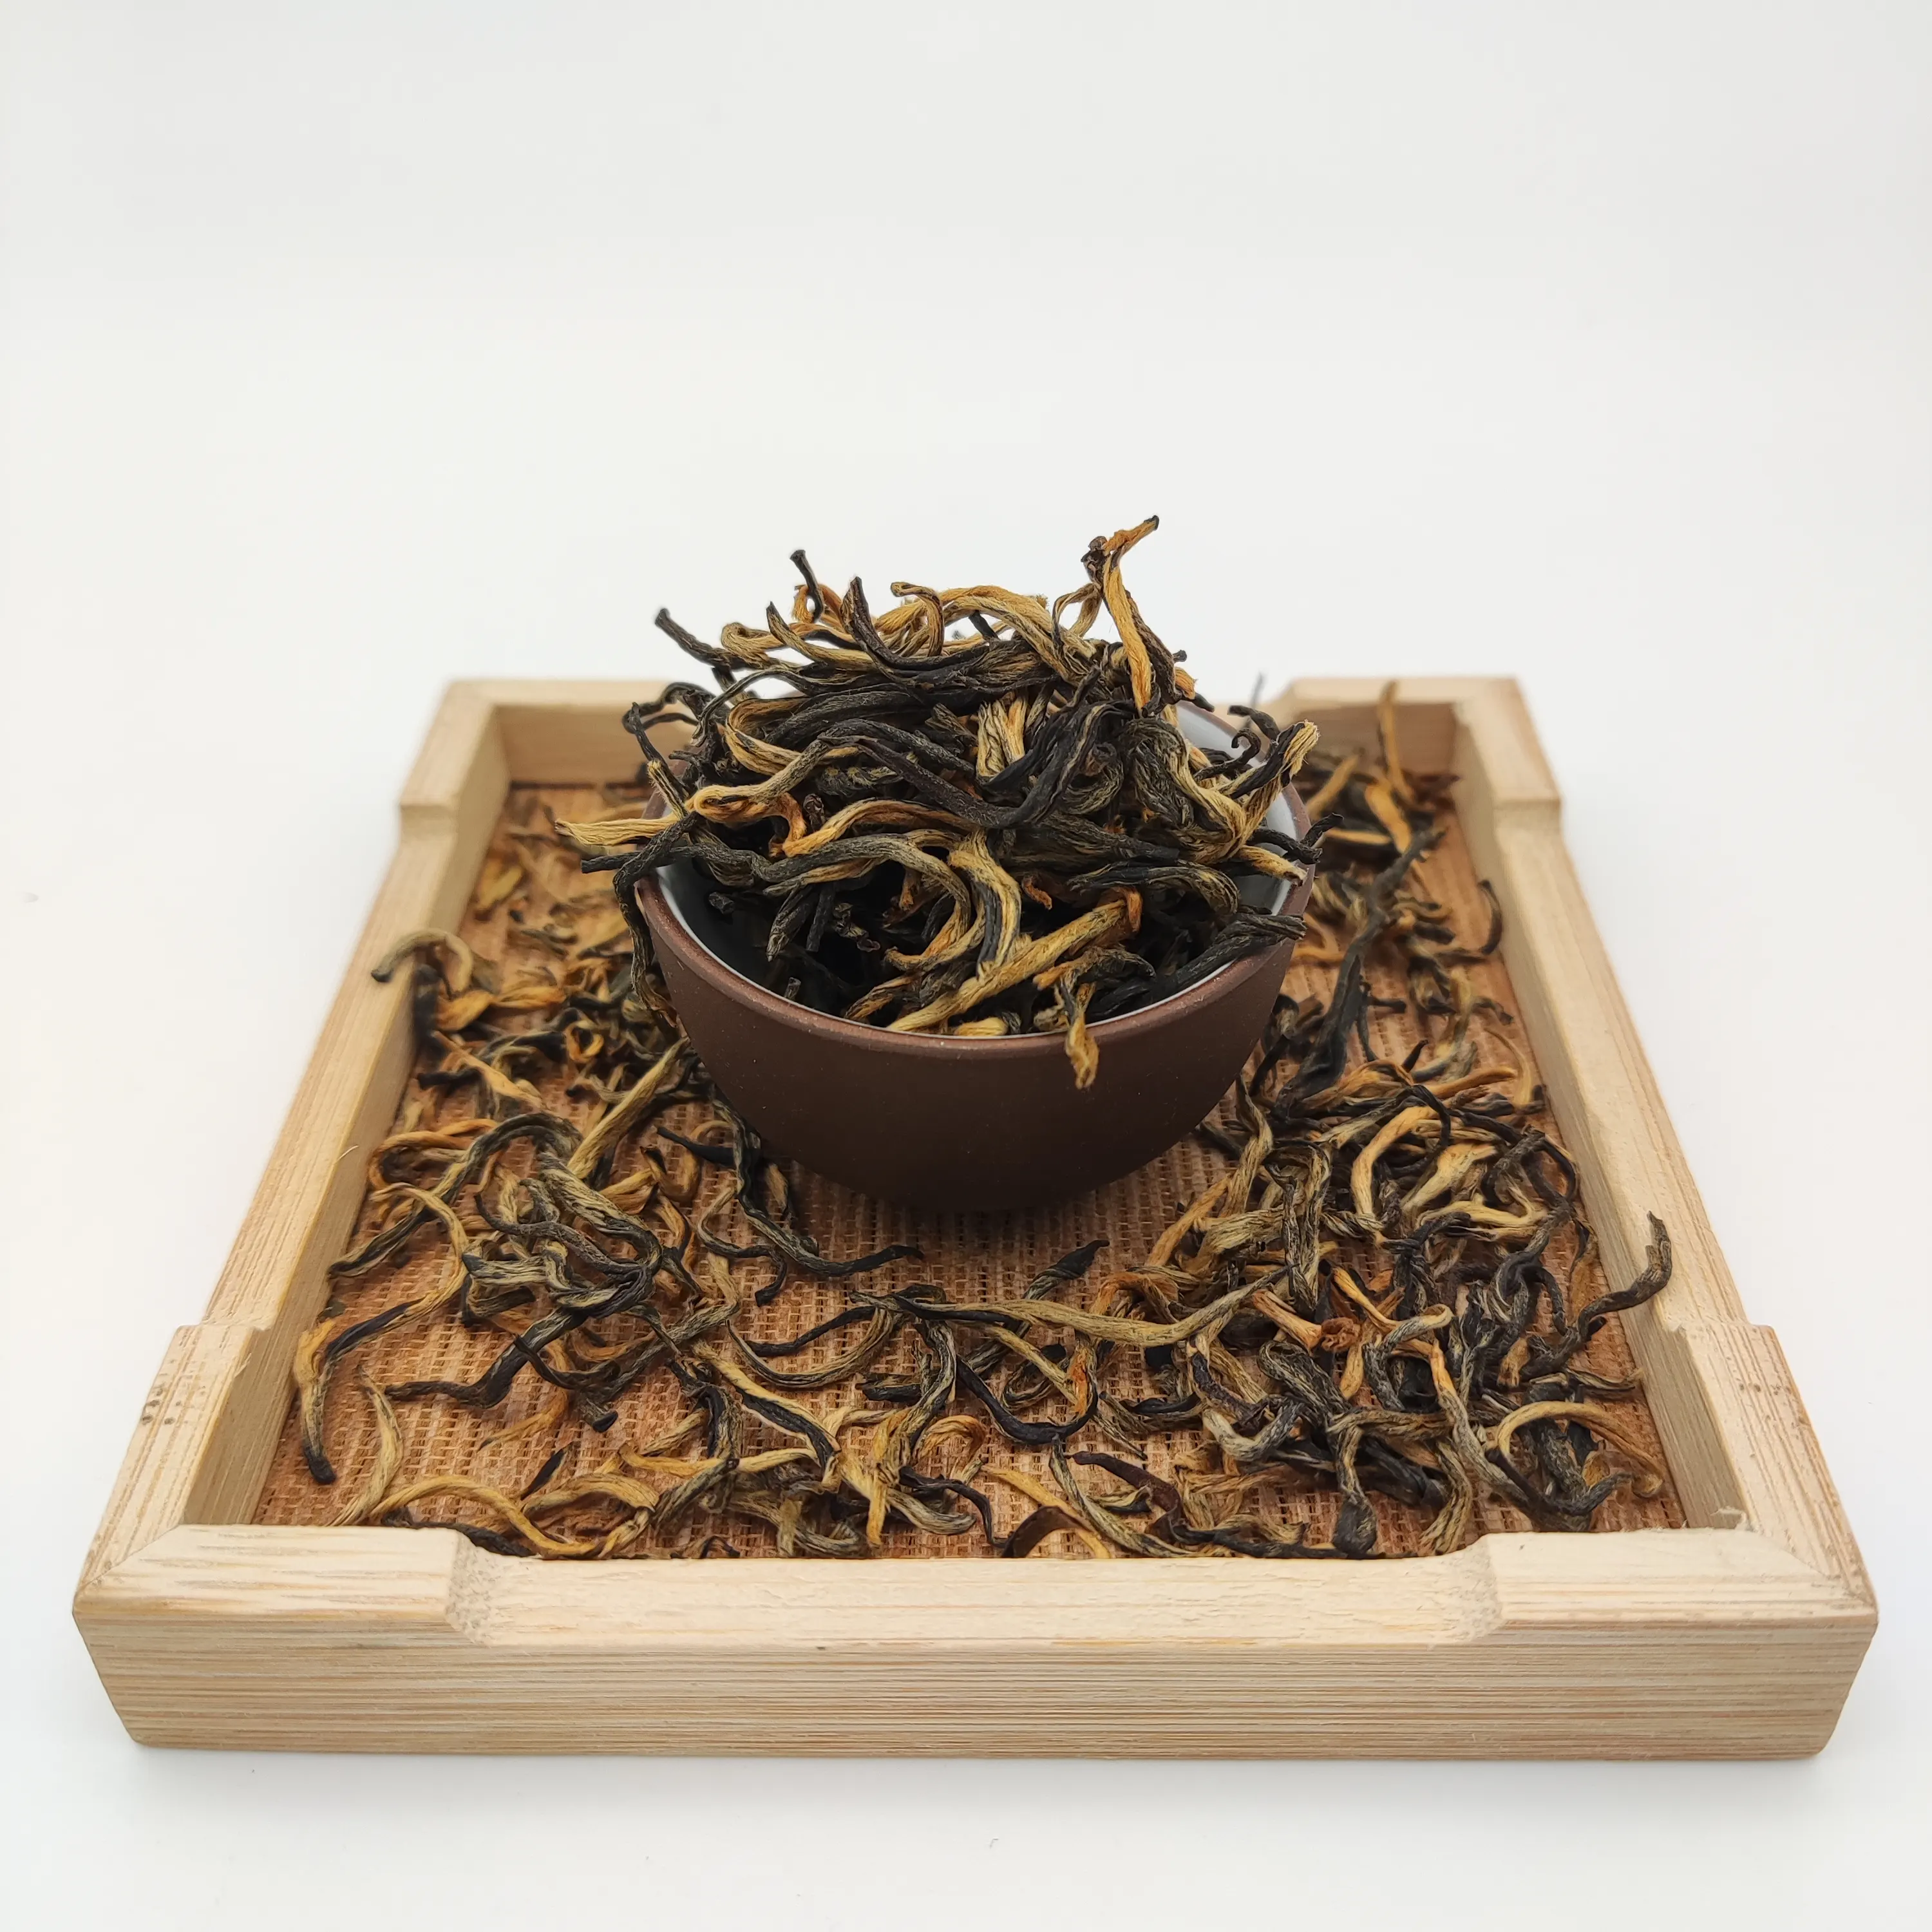 Chá de macaco de ouro de assam orgânico com pontas douradas, ceiônio solto de chá preto